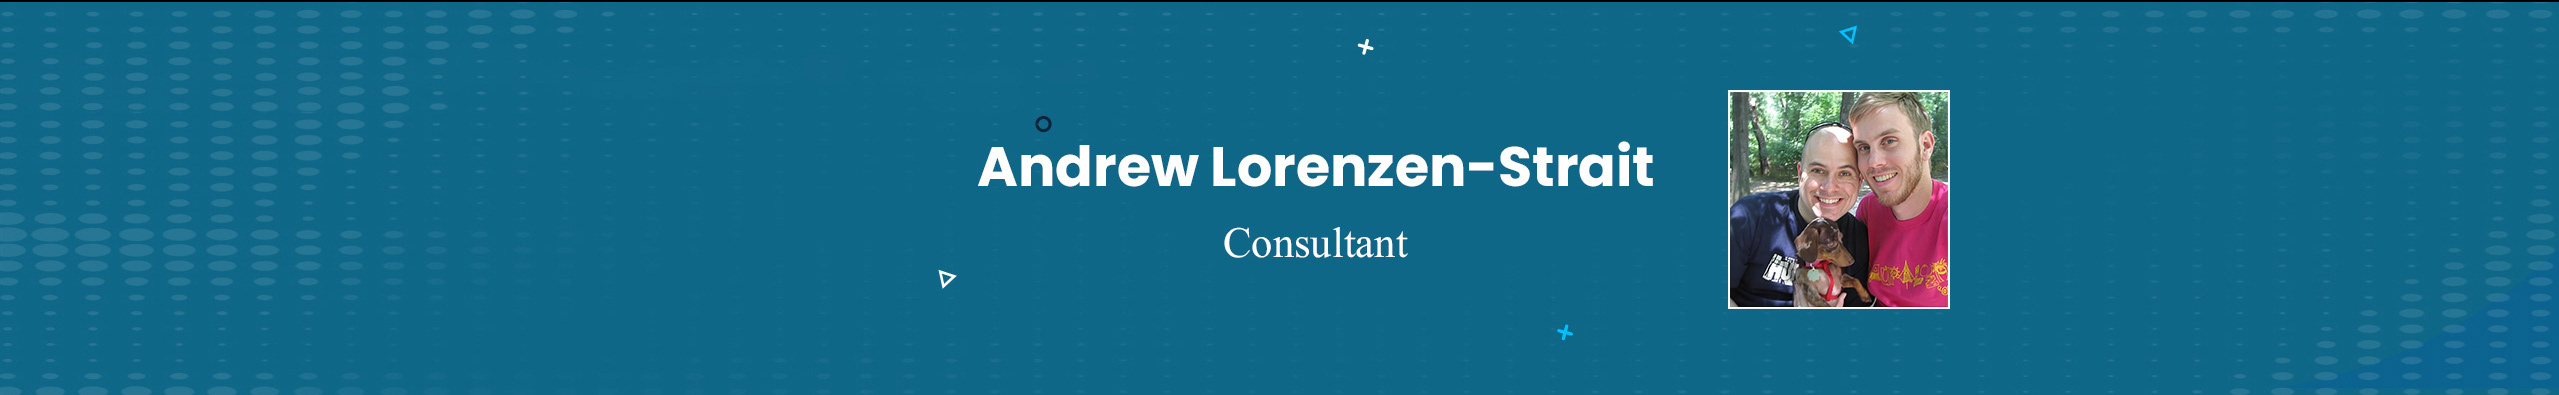 Andrew Lorenzen-Straits profilbanner